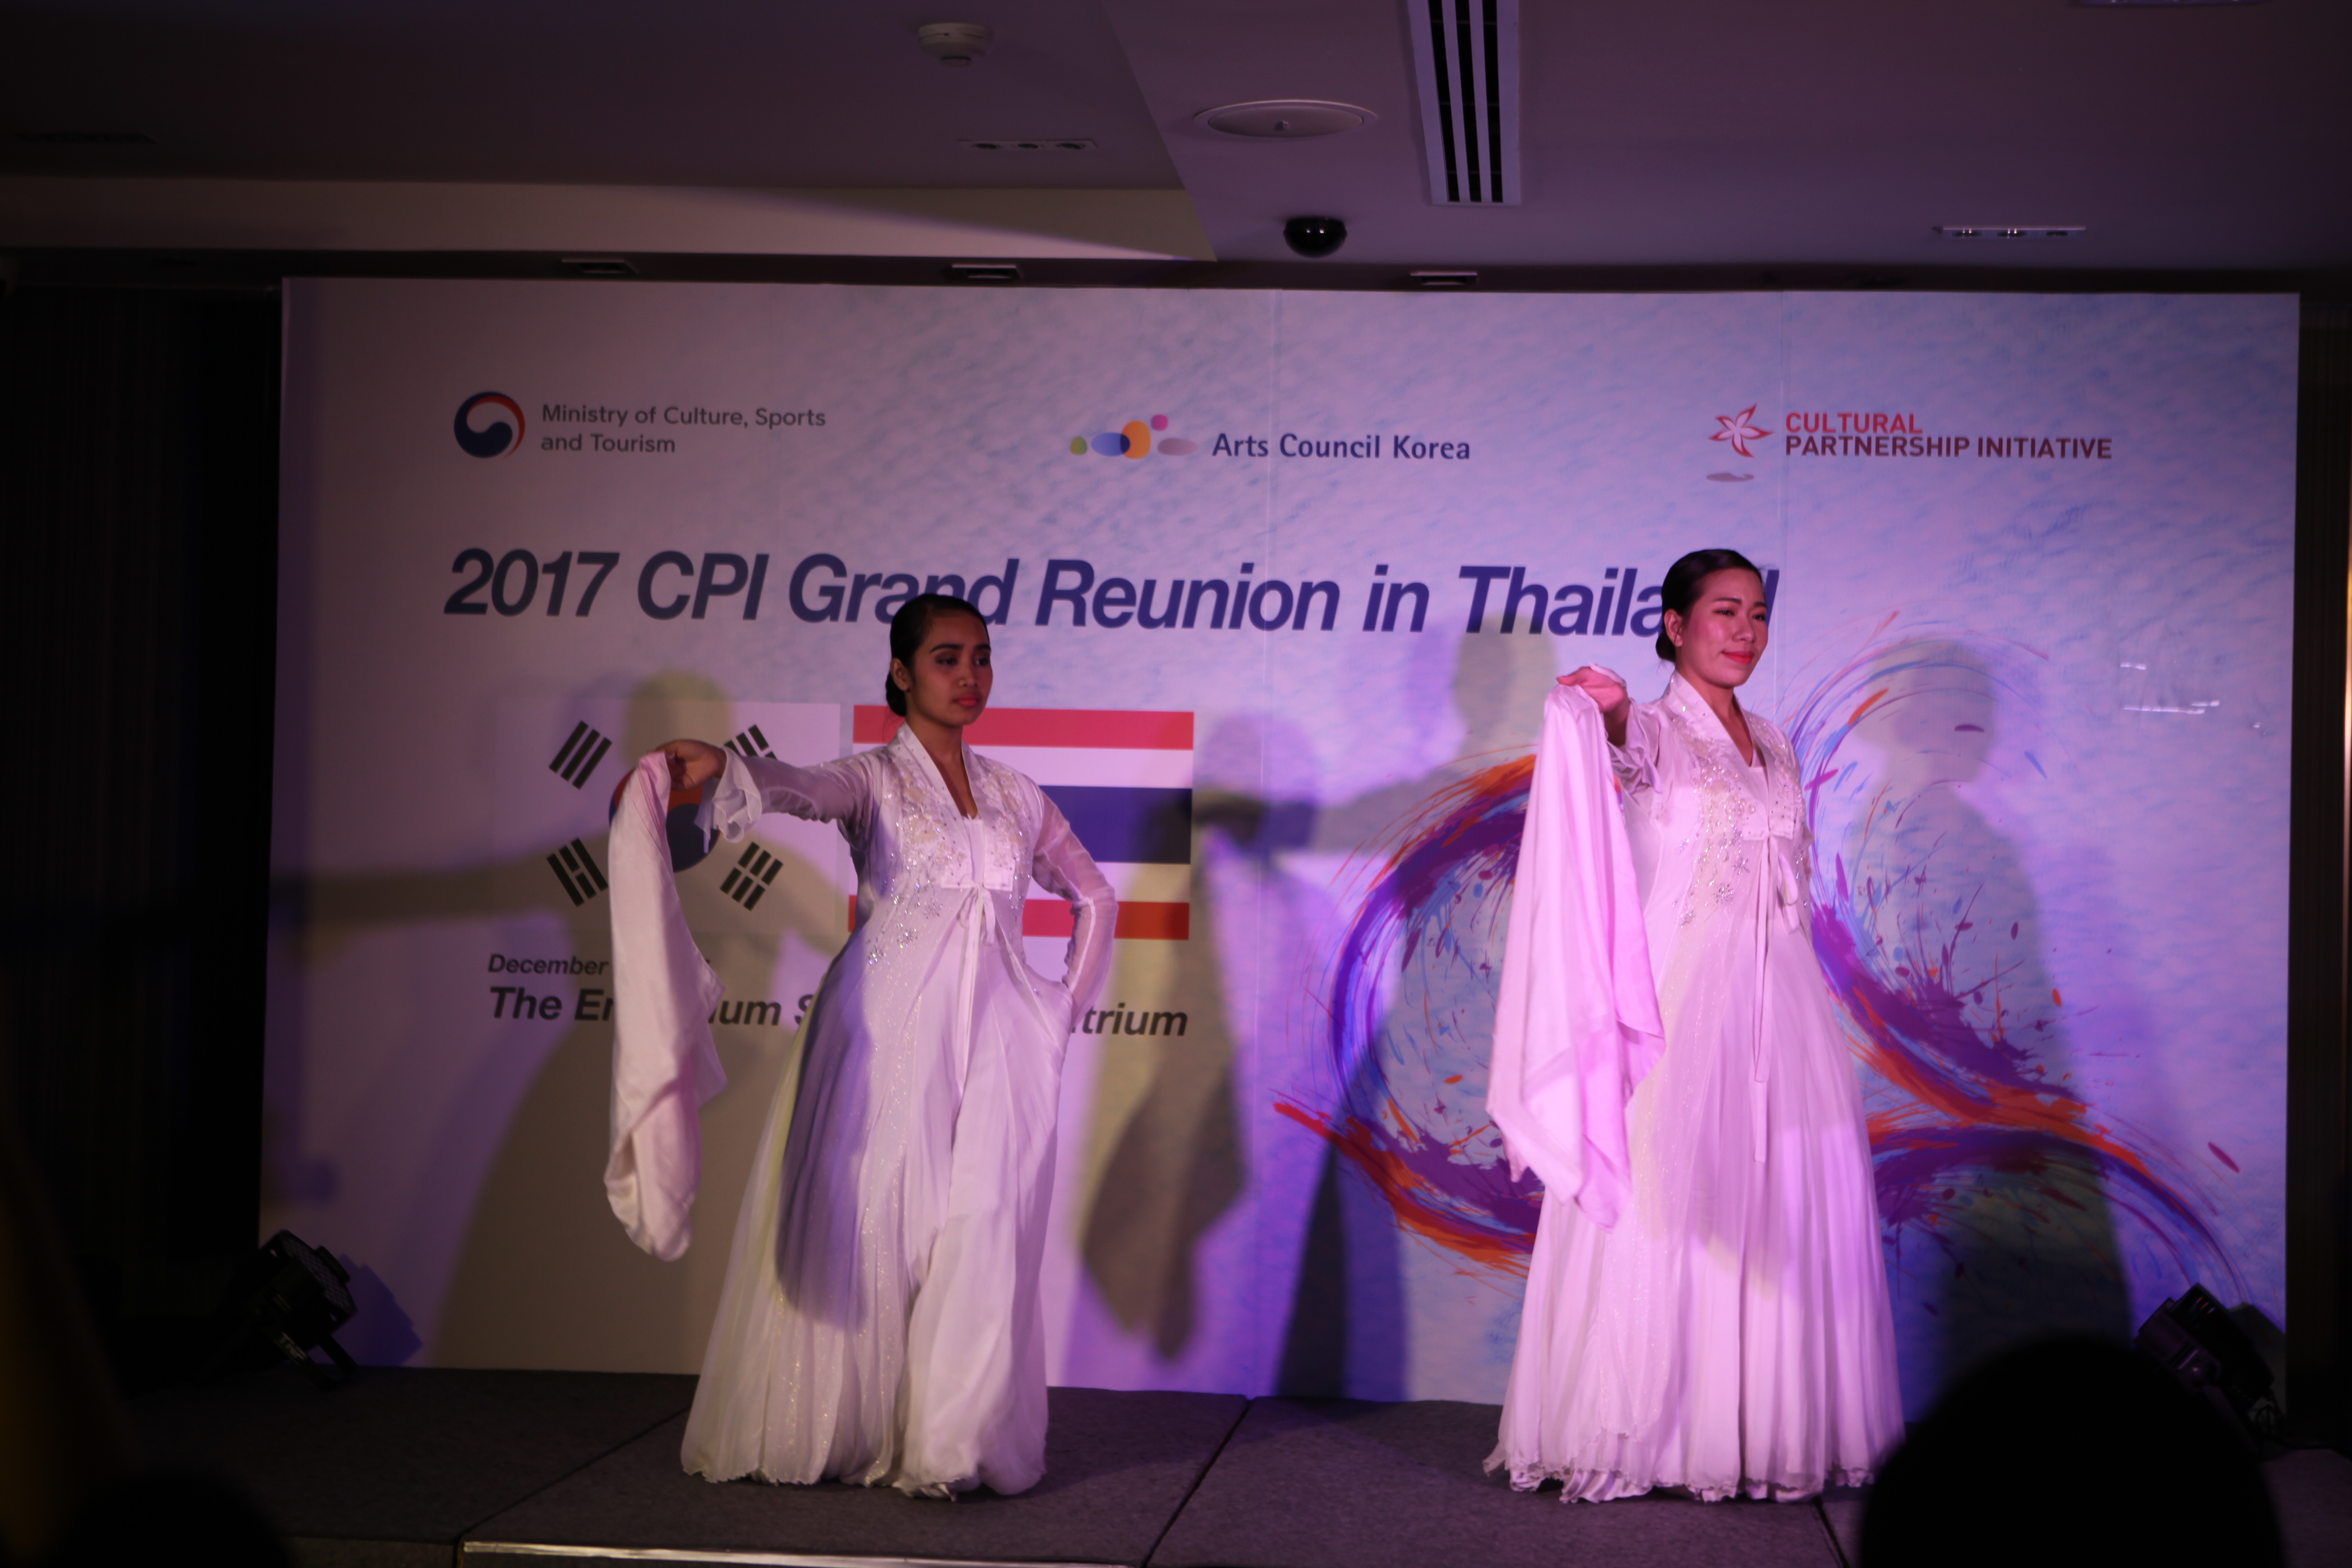 Arts Coucil Korea / Cultural Partnership Initiative (CPI)